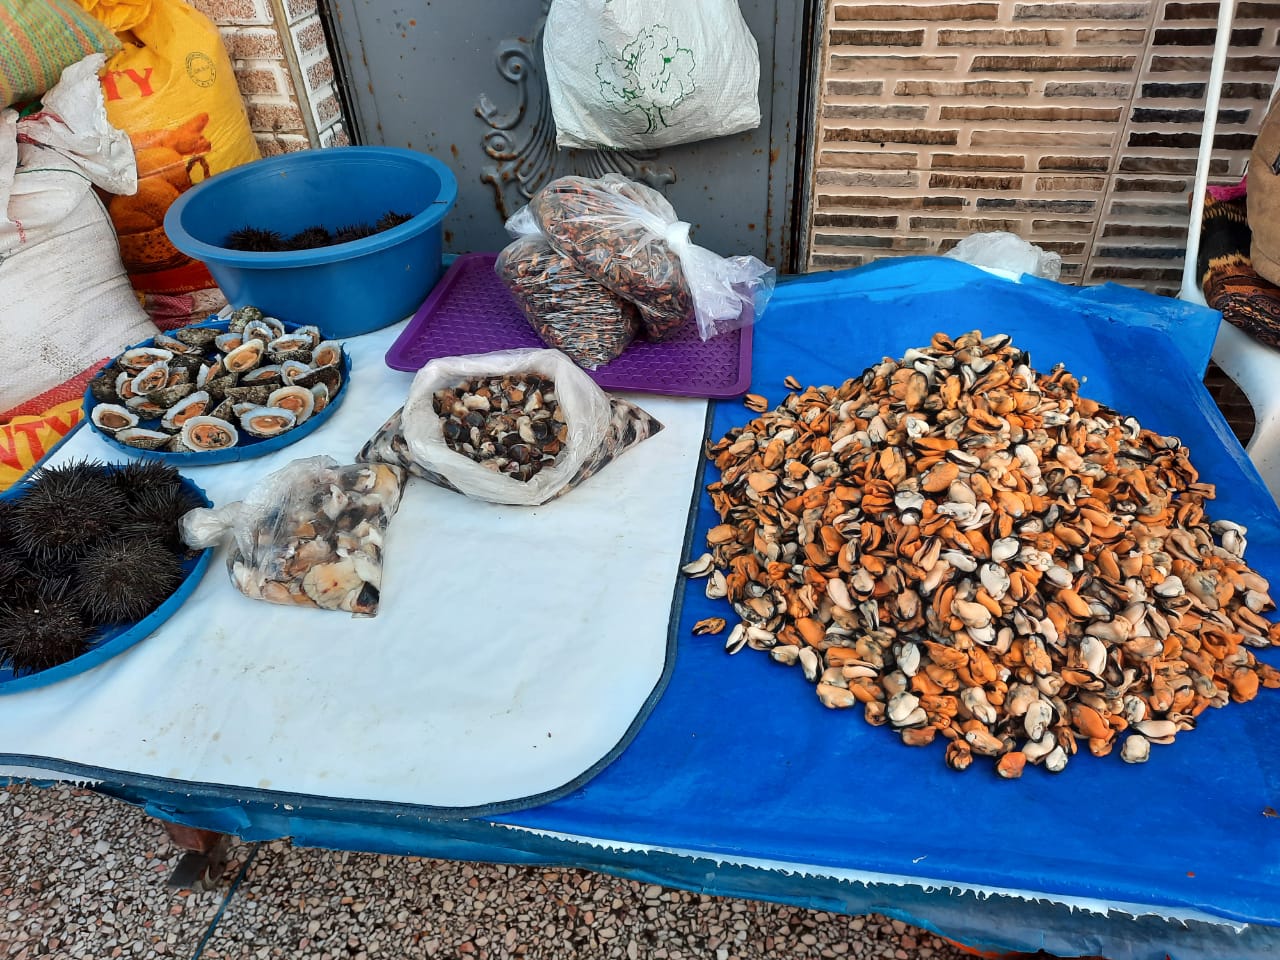 محار البحر كنزحقيقي يعزز التنوع الحيوي ويحرس البيئة البحرية لمدينة سيدي إفني